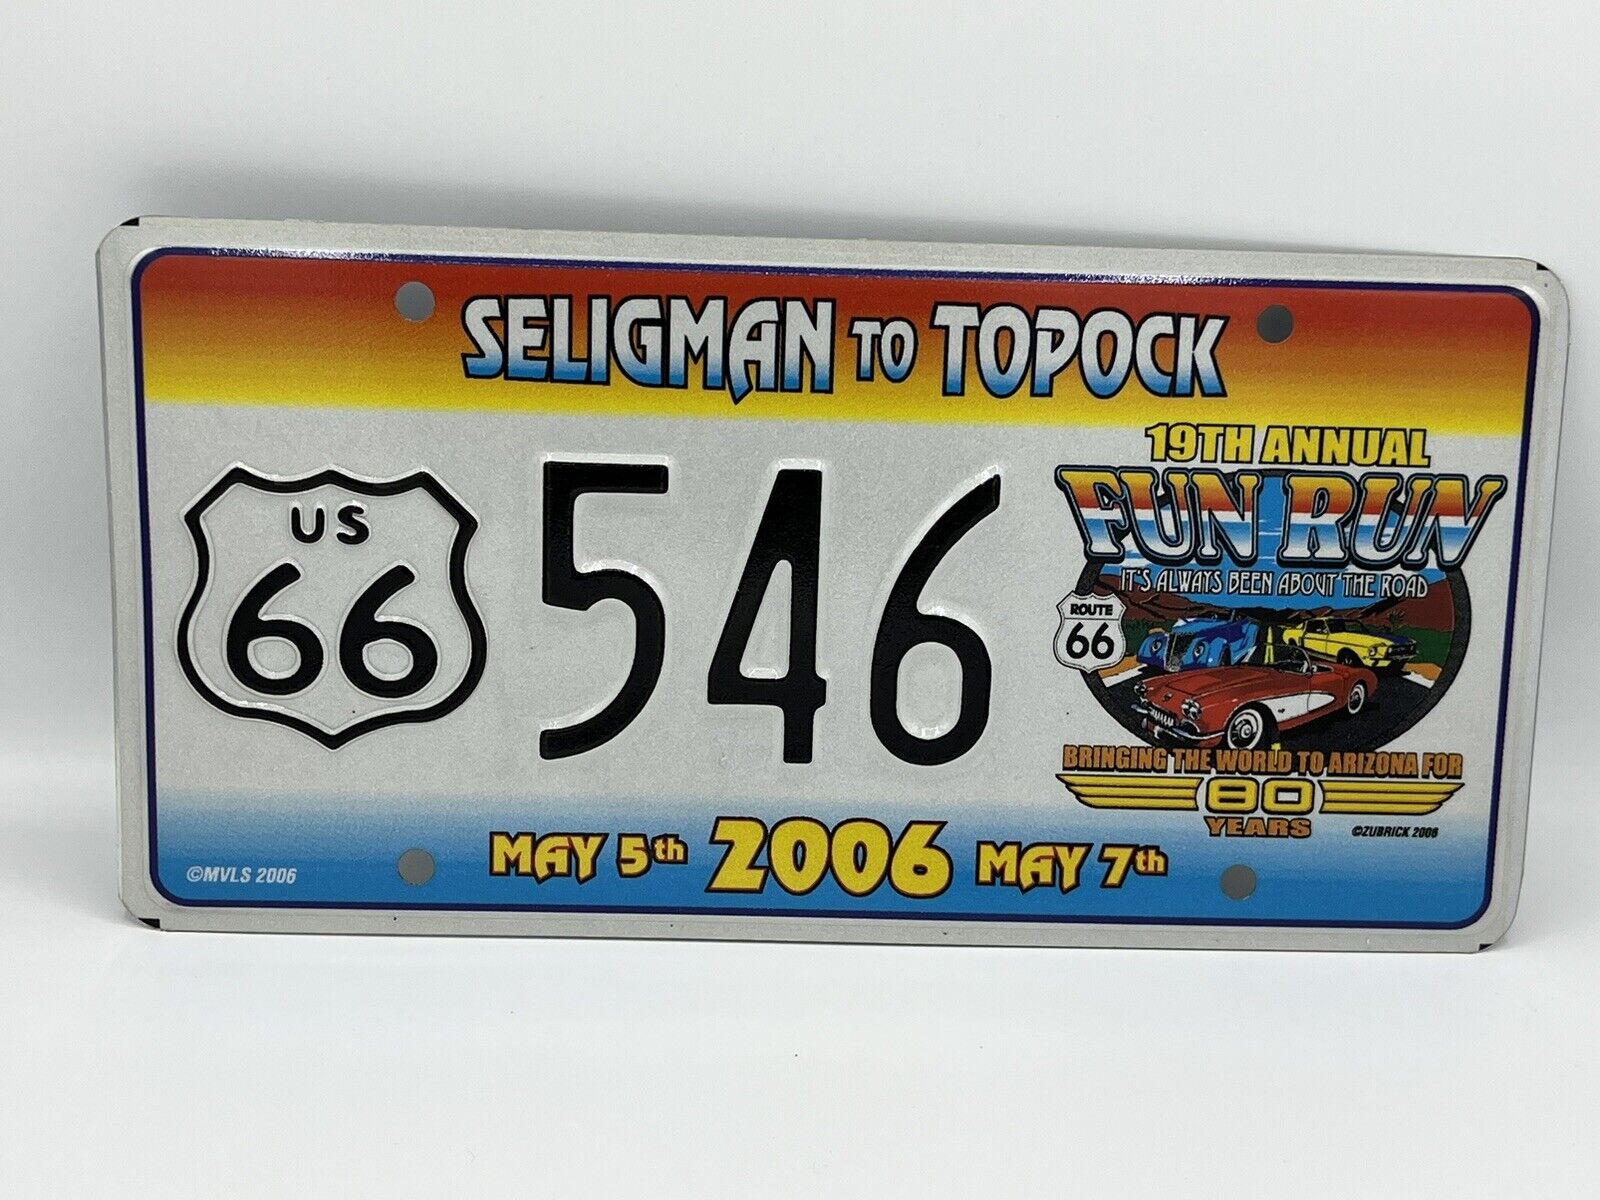 2006 Seligman to Topock Fun Run License Plate Historic Route 66 Arizona Cars